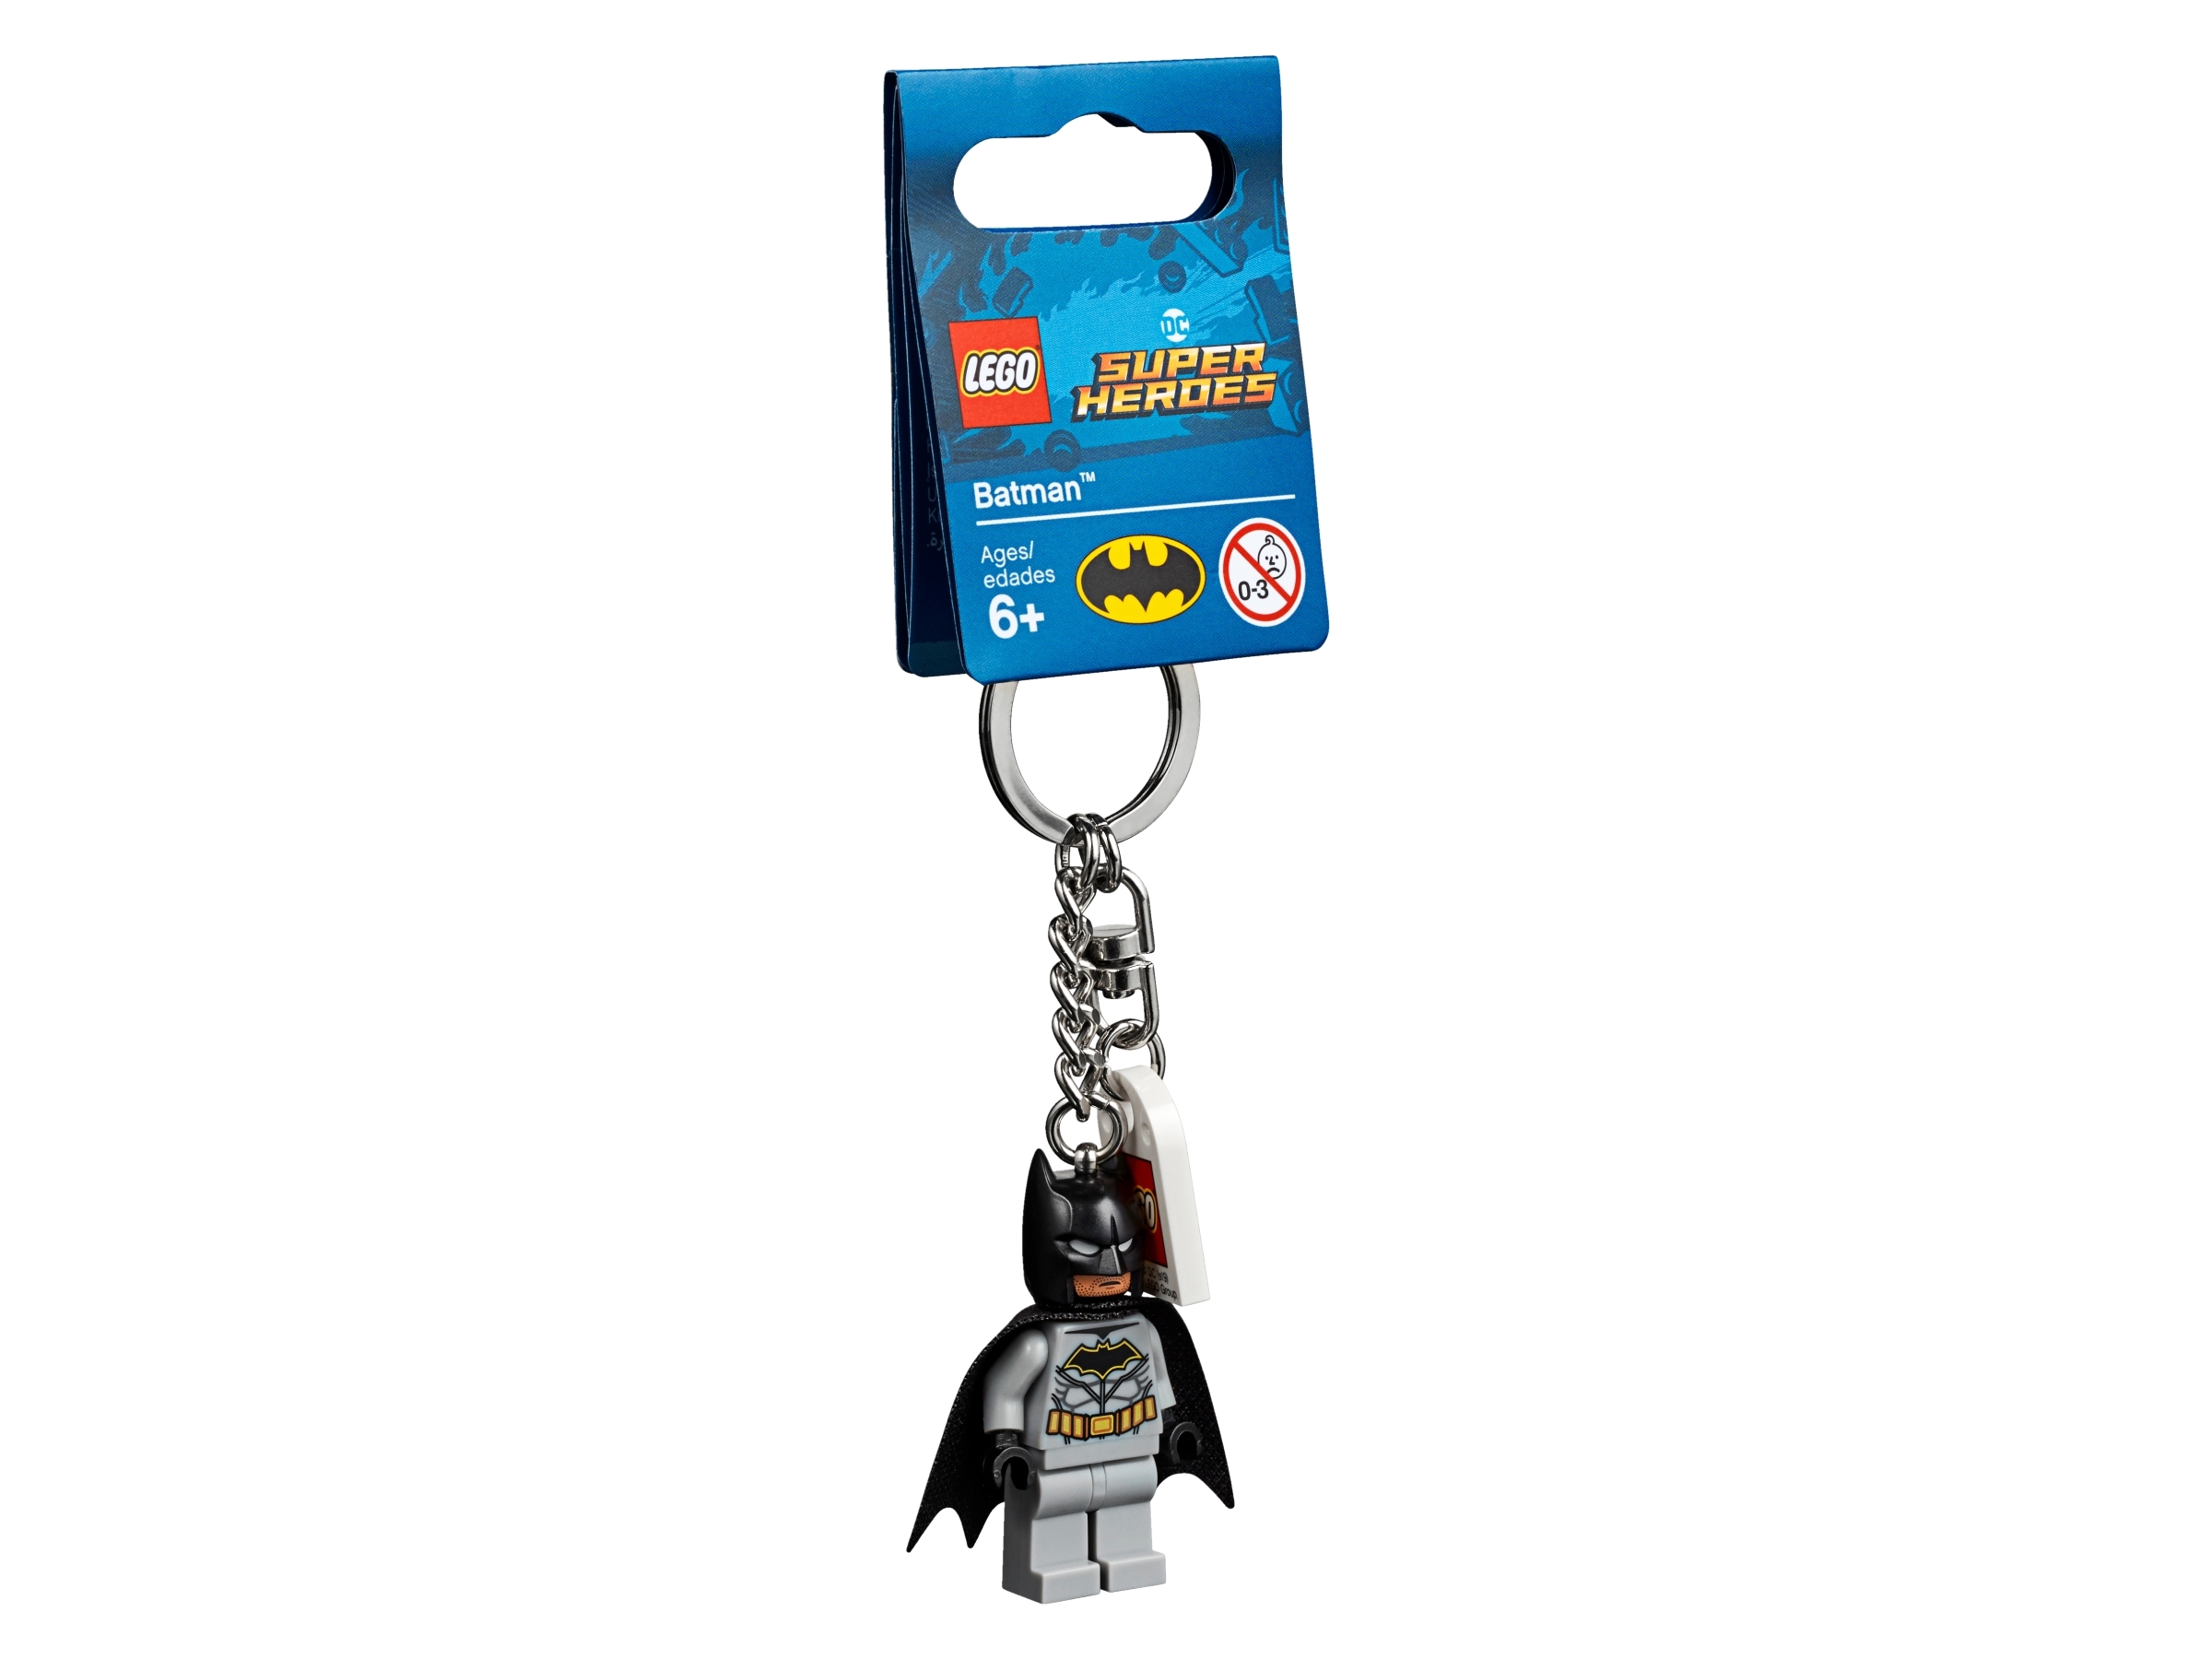 LEGO Key Chain Schlüsselanhänger Minifigur Figur Super Heroes Batman NEU OVP 